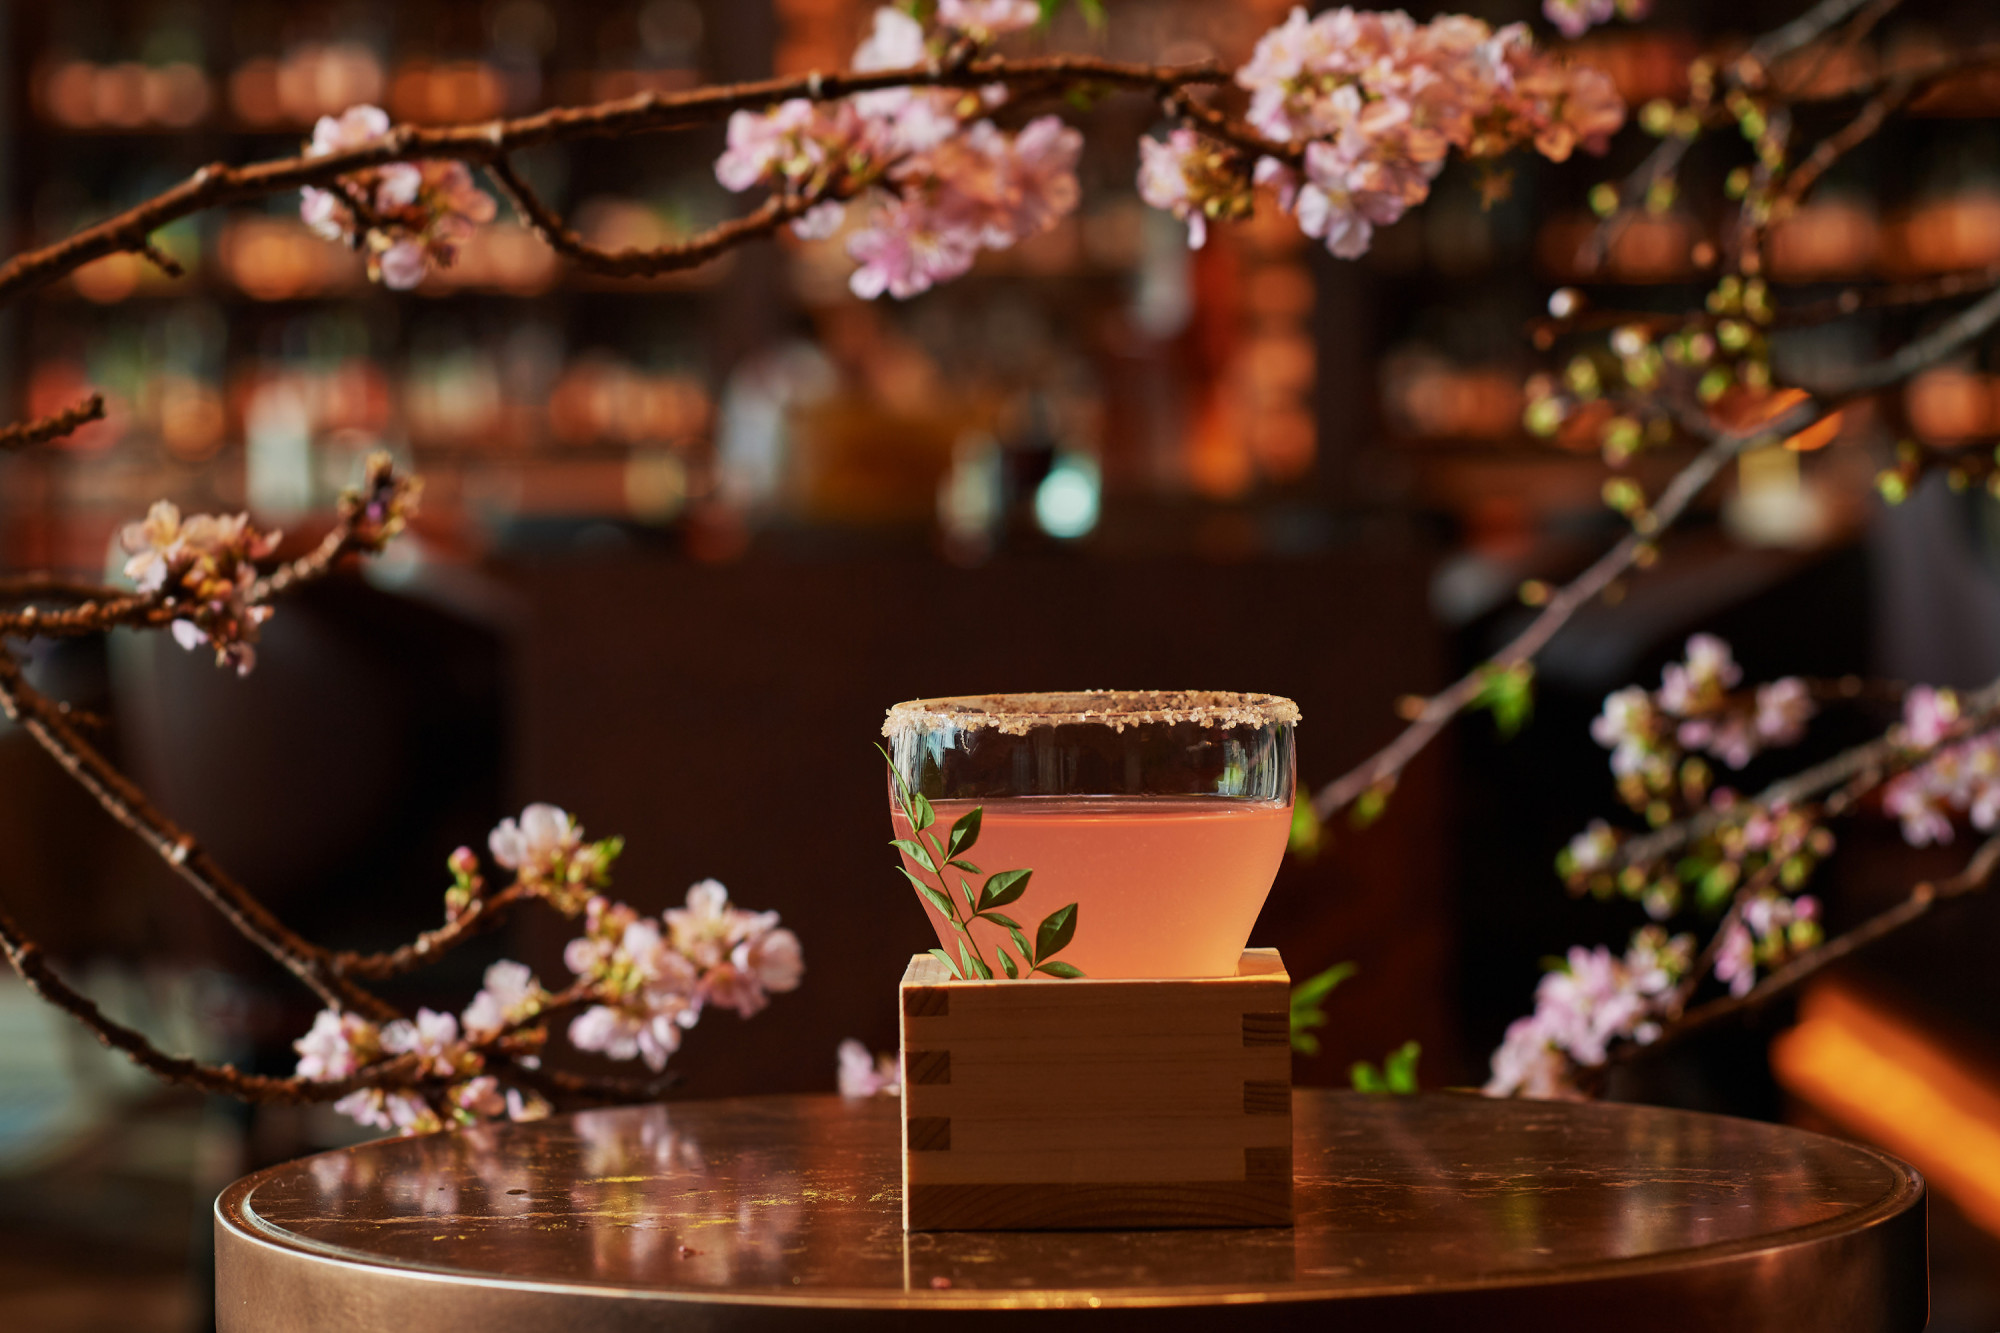 Cocktail hoa anh đào Virtù Someiyoshino Một trong những quán bar tuyệt nhất ở Tokyo, Virtù tại khách sạn Four Seasons Tokyo ở Otemachi đang chào mừng mùa xuân đến với ly cocktail hoa anh đào Somei Yoshino tuyệt đẹp. Đồ uống này được làm từ rượu shochu gạo, rượu mùi hoa anh đào và rượu sake, đồng thời được tạo điểm nhấn bằng cam quýt để mang lại cảm giác sảng khoái khi kết thúc. ¥3,300